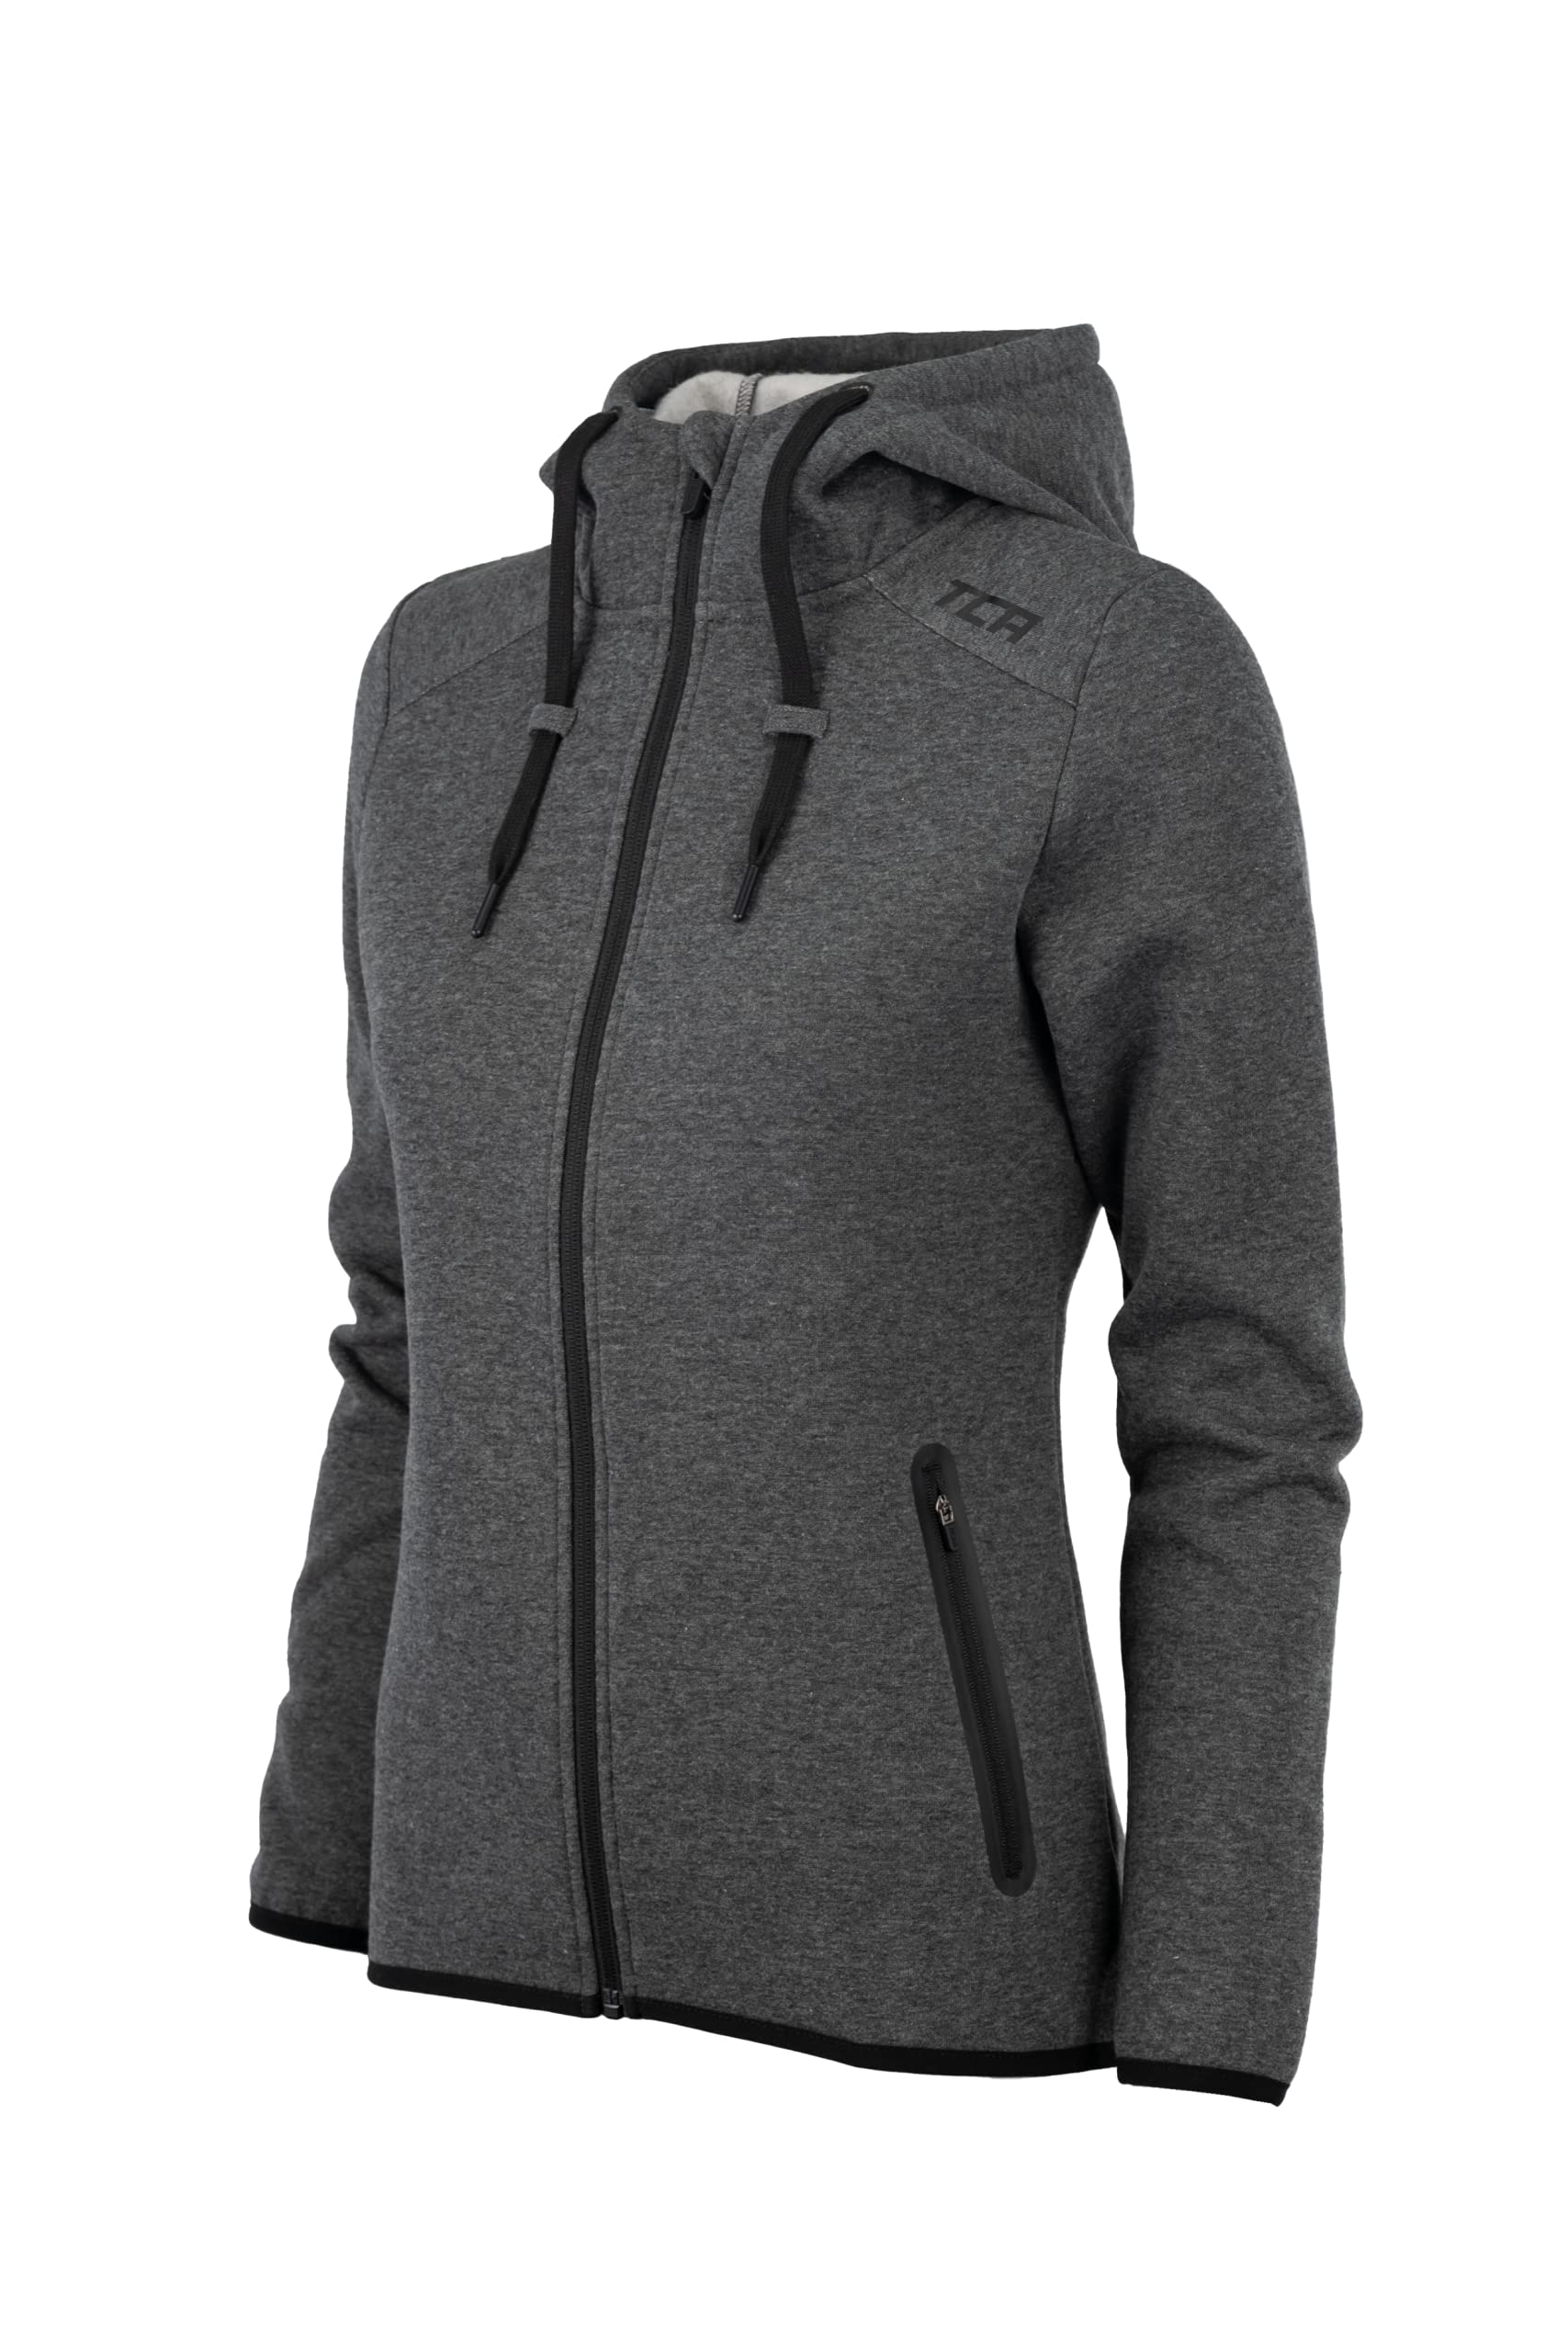 TCA Damen Revolution Hoodie, Sweatjacke mit Kapuze und Reißverschlusstaschen - Grau, M